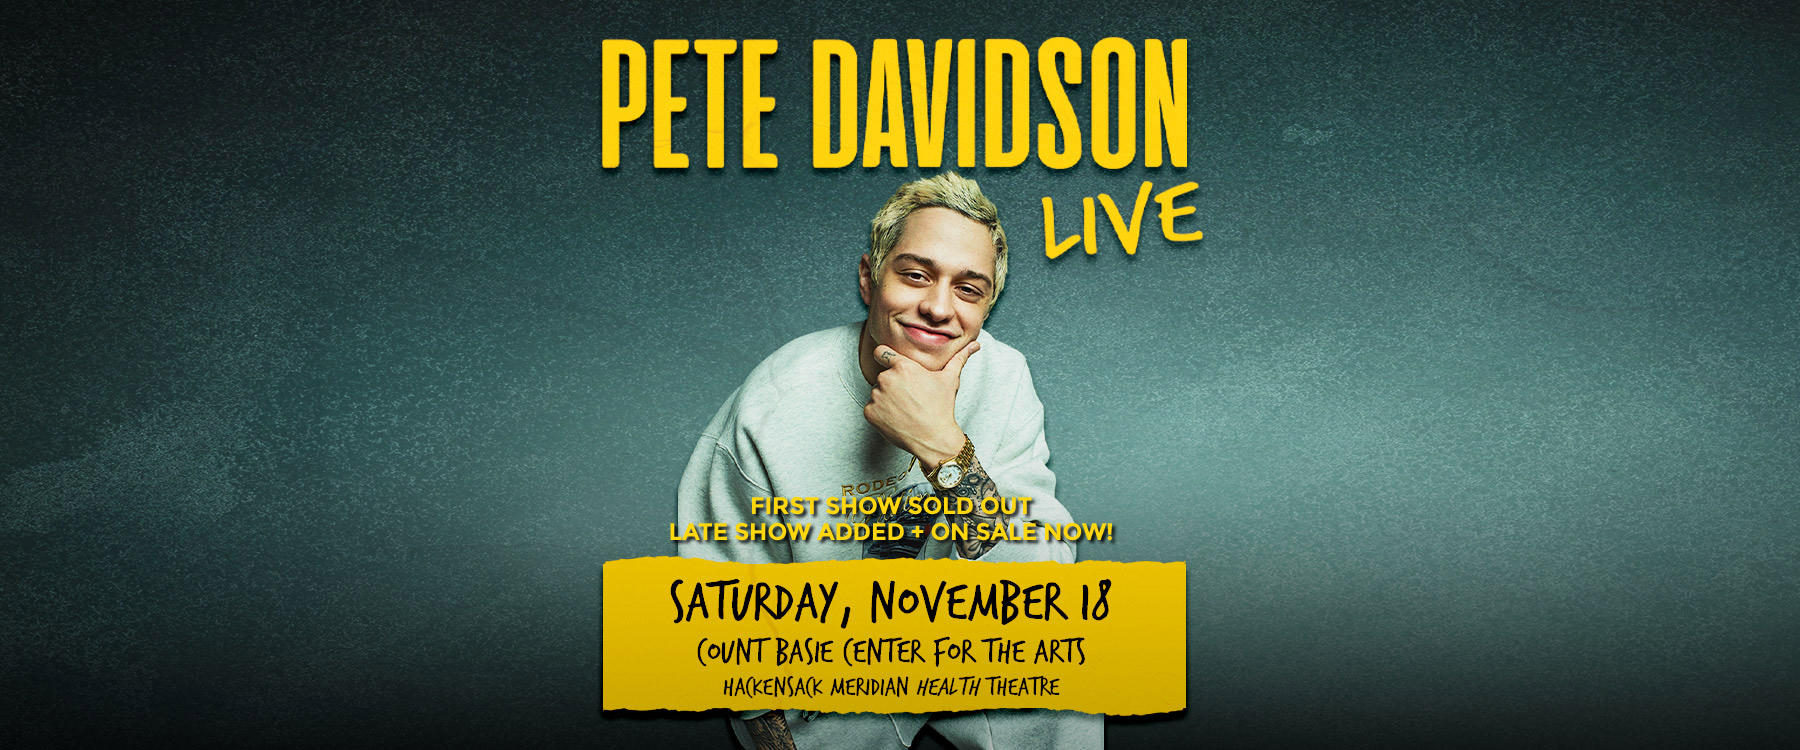 Pete Davidson - Live